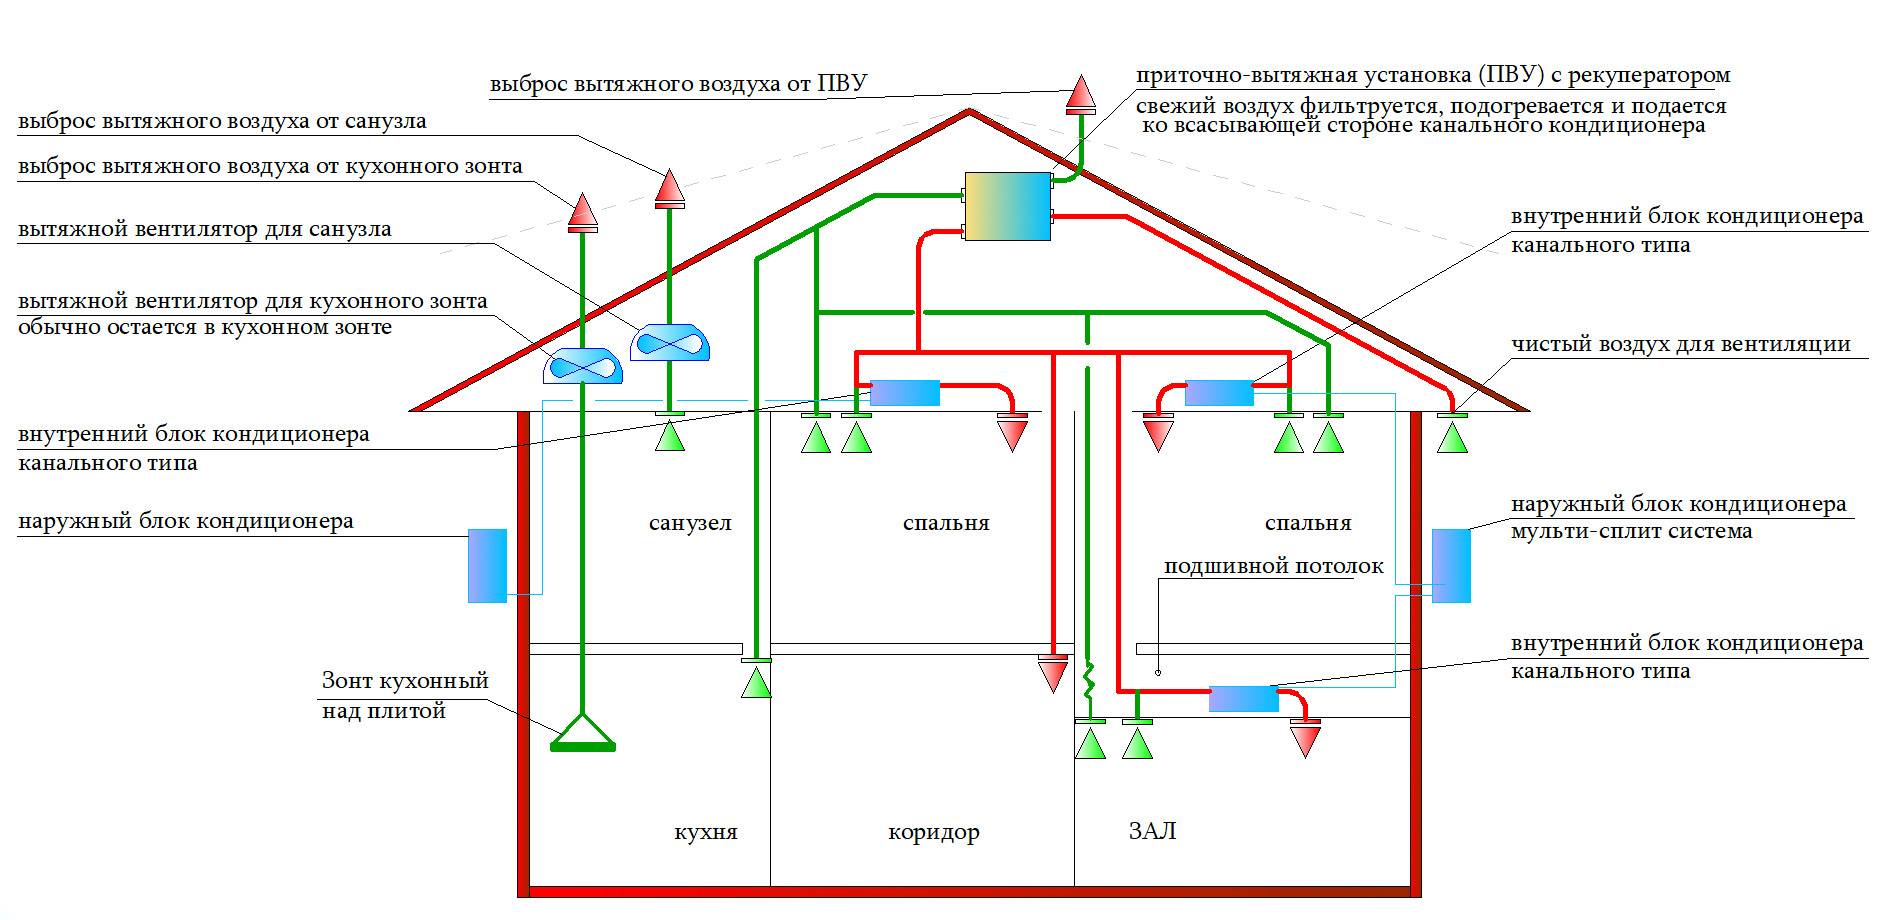 Устройство и проблемы функционирования вентиляции в многоэтажных домах